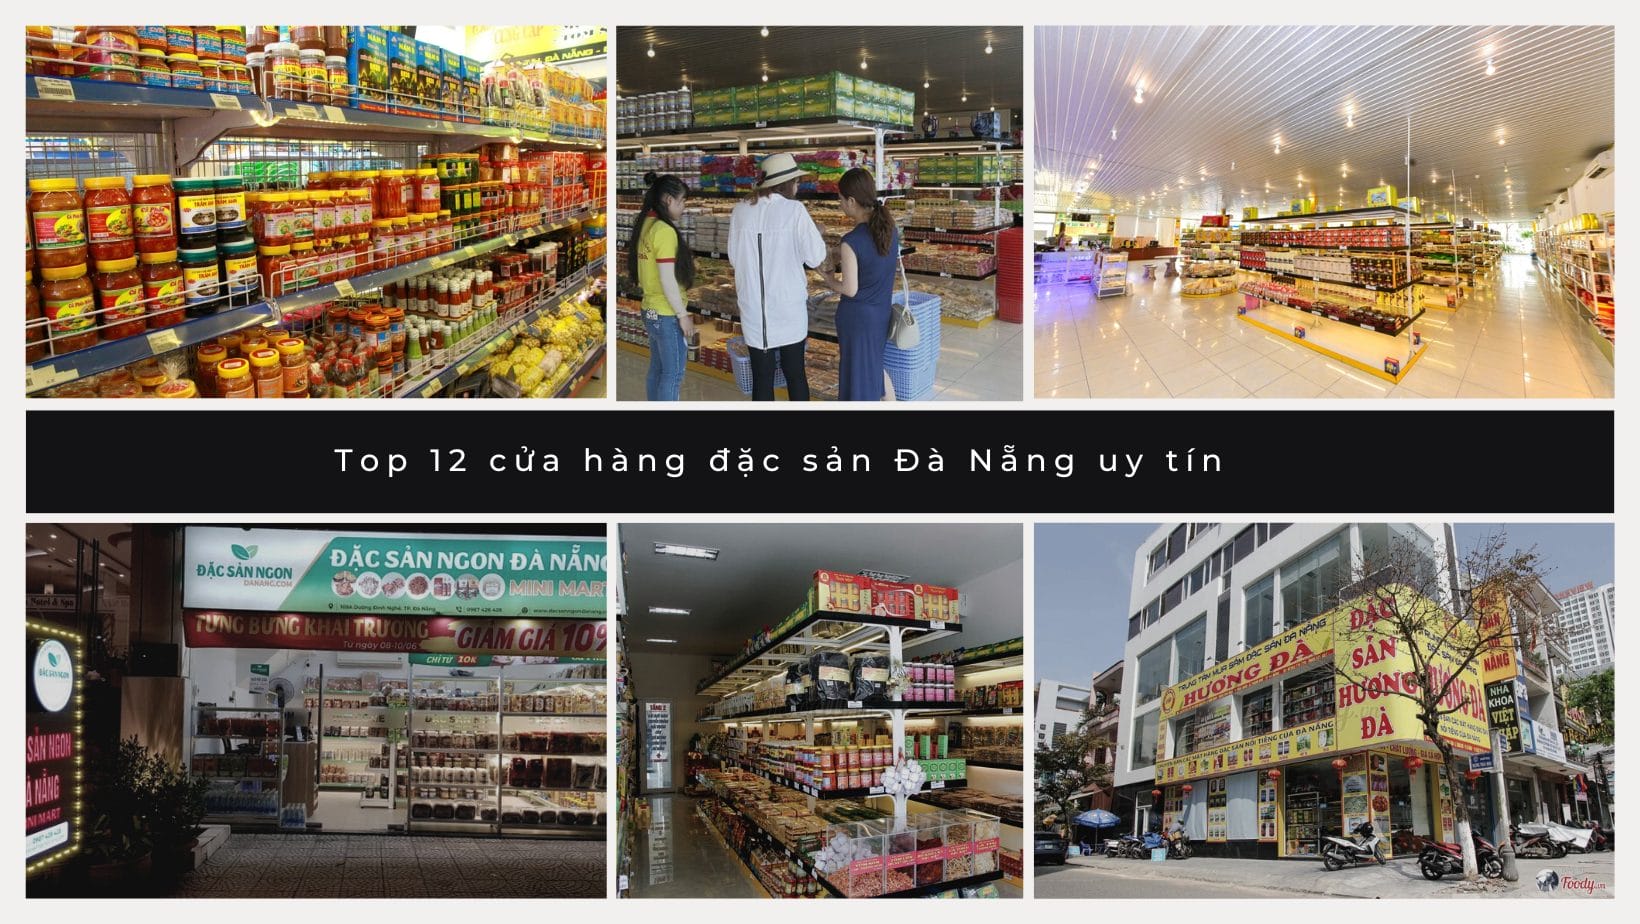 Top 12 cửa hàng đặc sản Đà Nẵng uy tín, chất lượng và giá rẻ